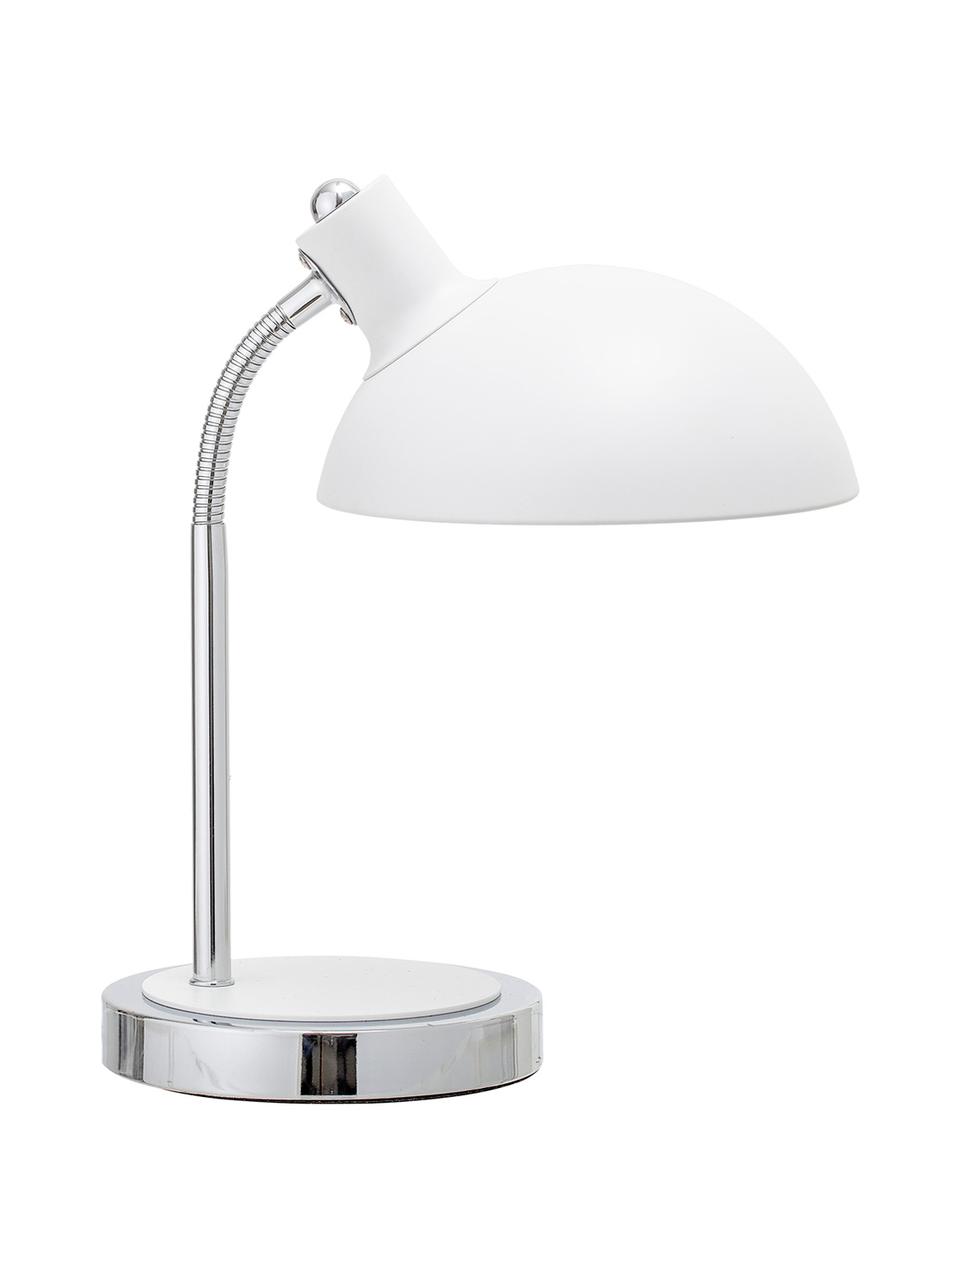 Schreibtischlampe Charlotte in Weiß, Lampenschirm: Metall, lackiert, Gestell: Metall, Lampenfuß: Metall, lackiert, Weiß, Ø 23 x H 40 cm